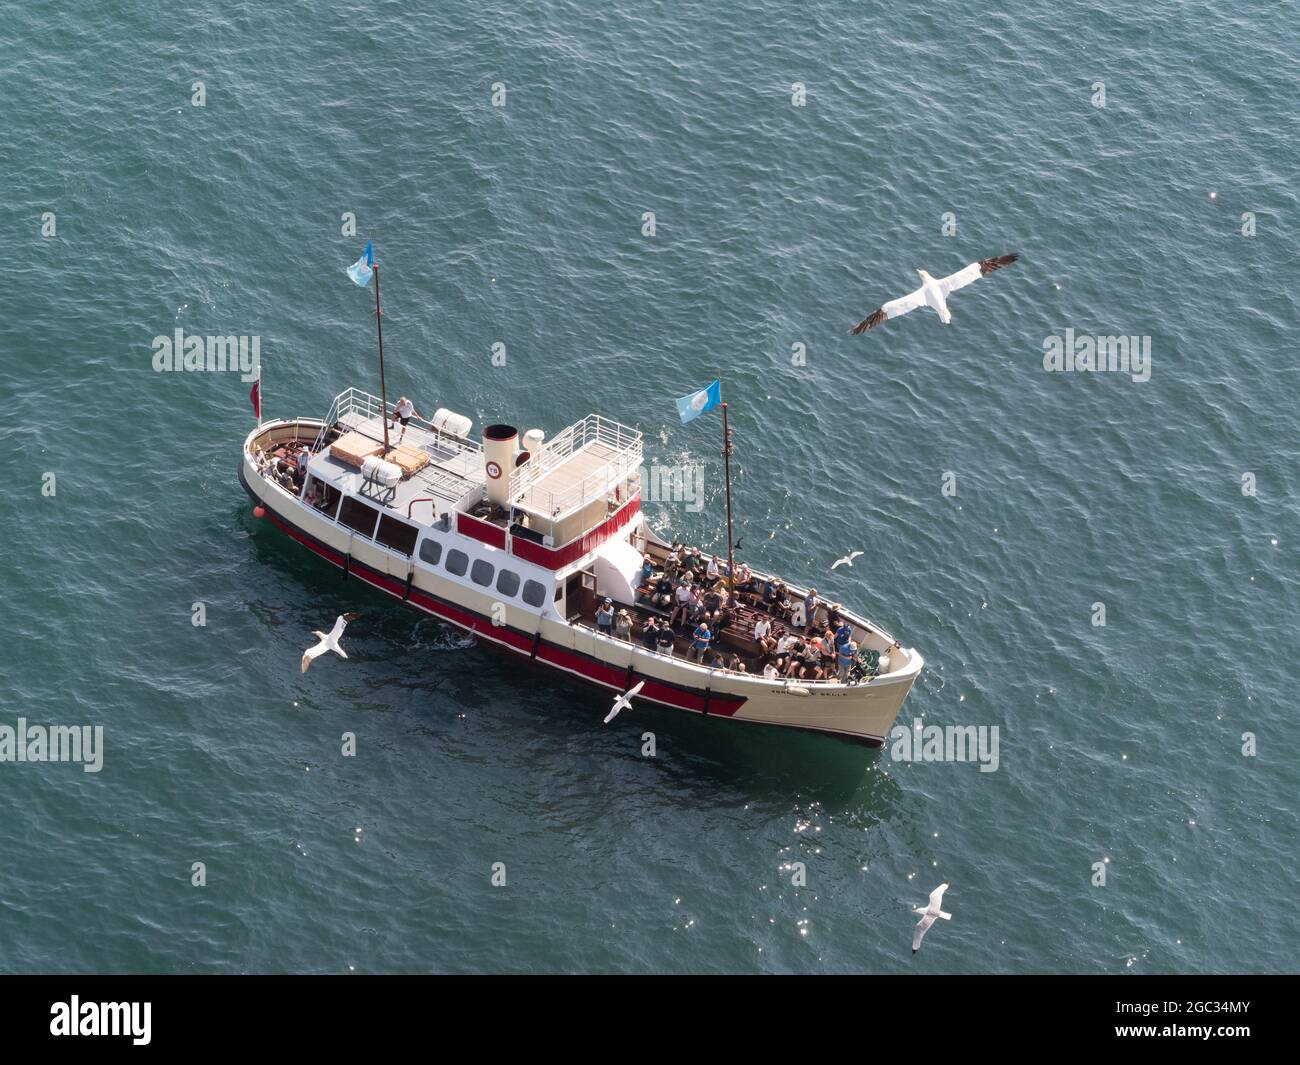 Ein Wildlife-Kreuzfahrt-Boot auf See hat mehrere Passagiere an Bord.von oben auf See gesehen können Seevögel fliegen sehen Stockfoto